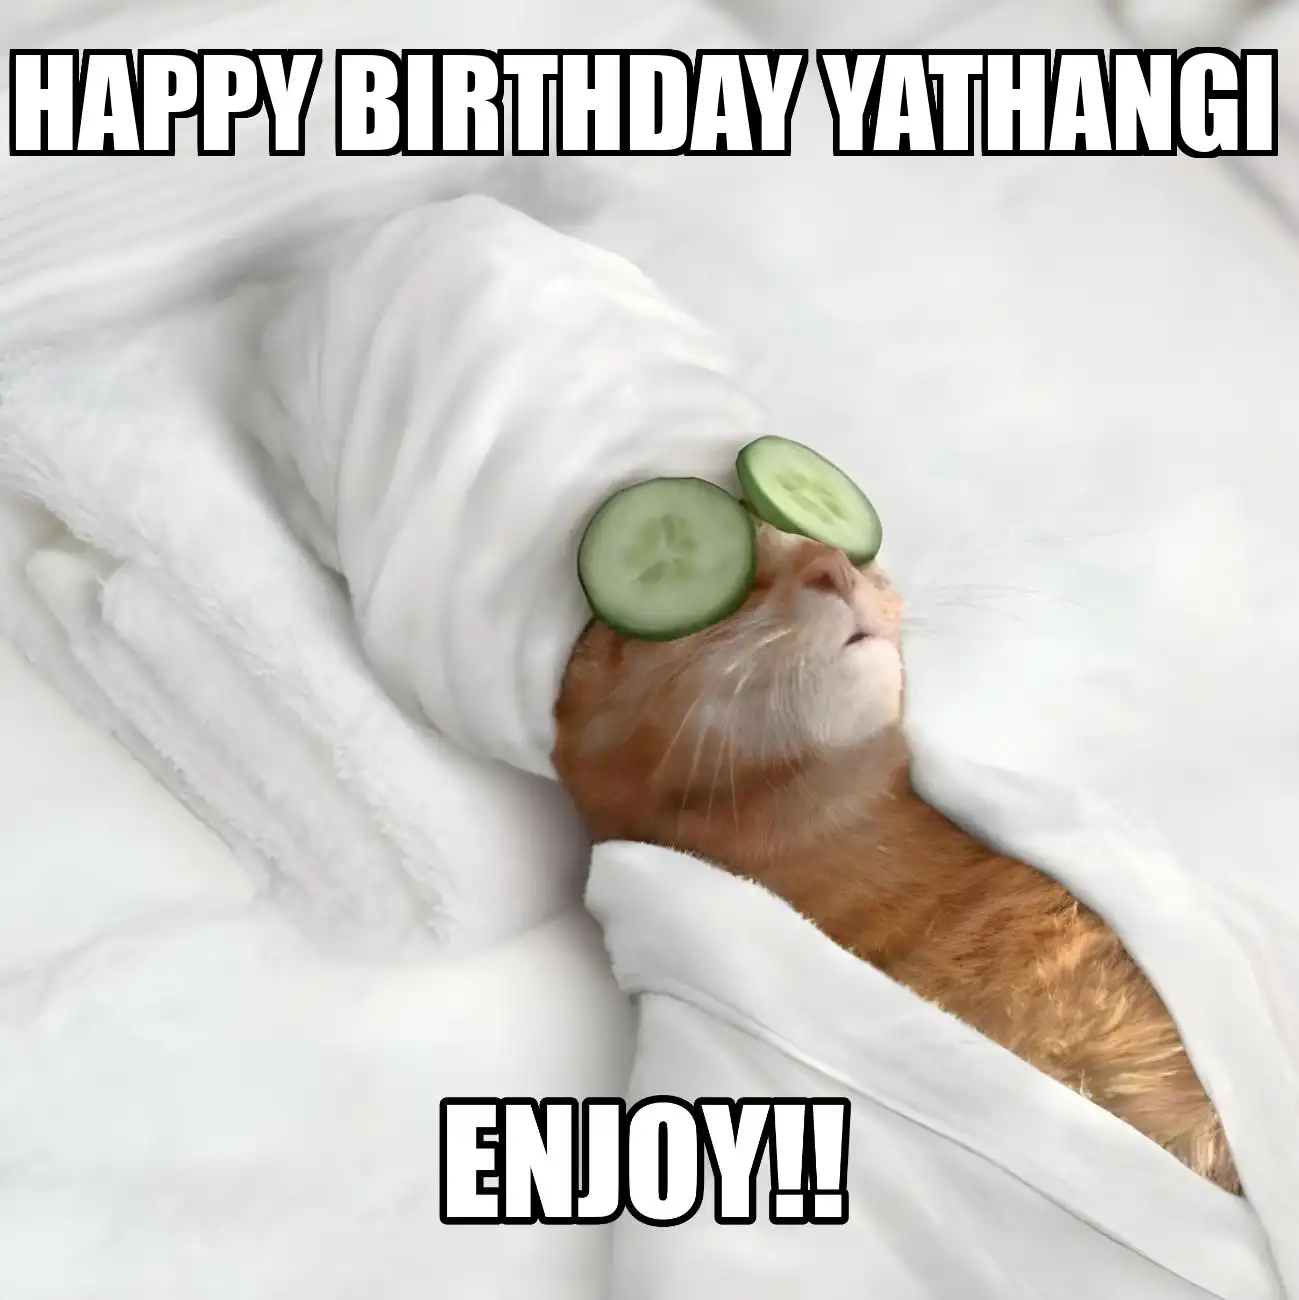 Happy Birthday Yathangi Enjoy Cat Meme